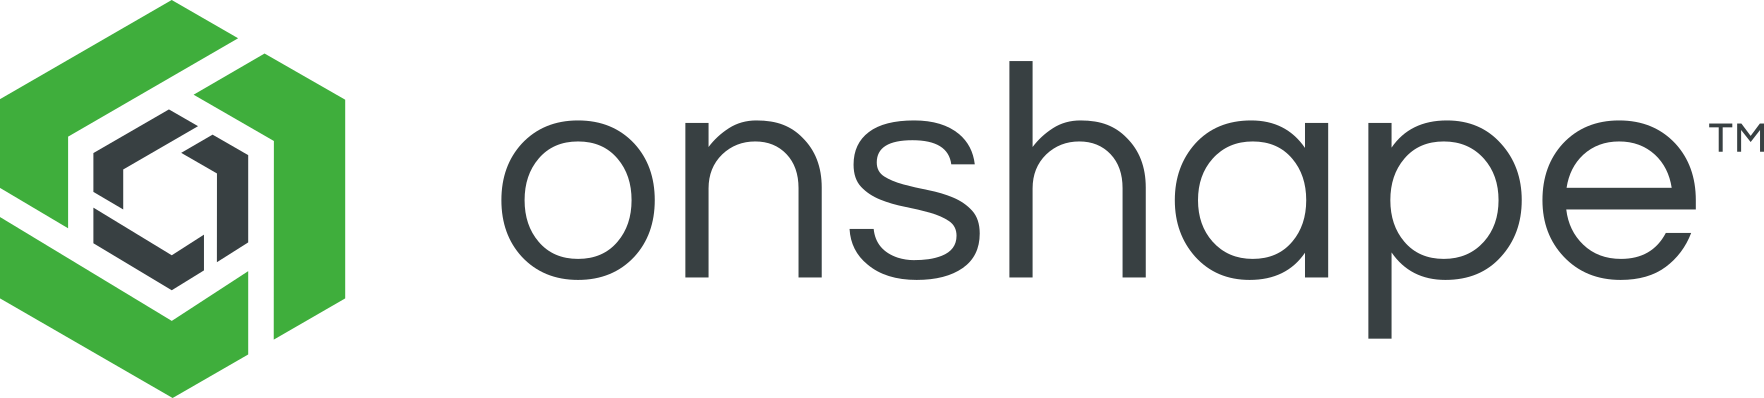 onshape logo